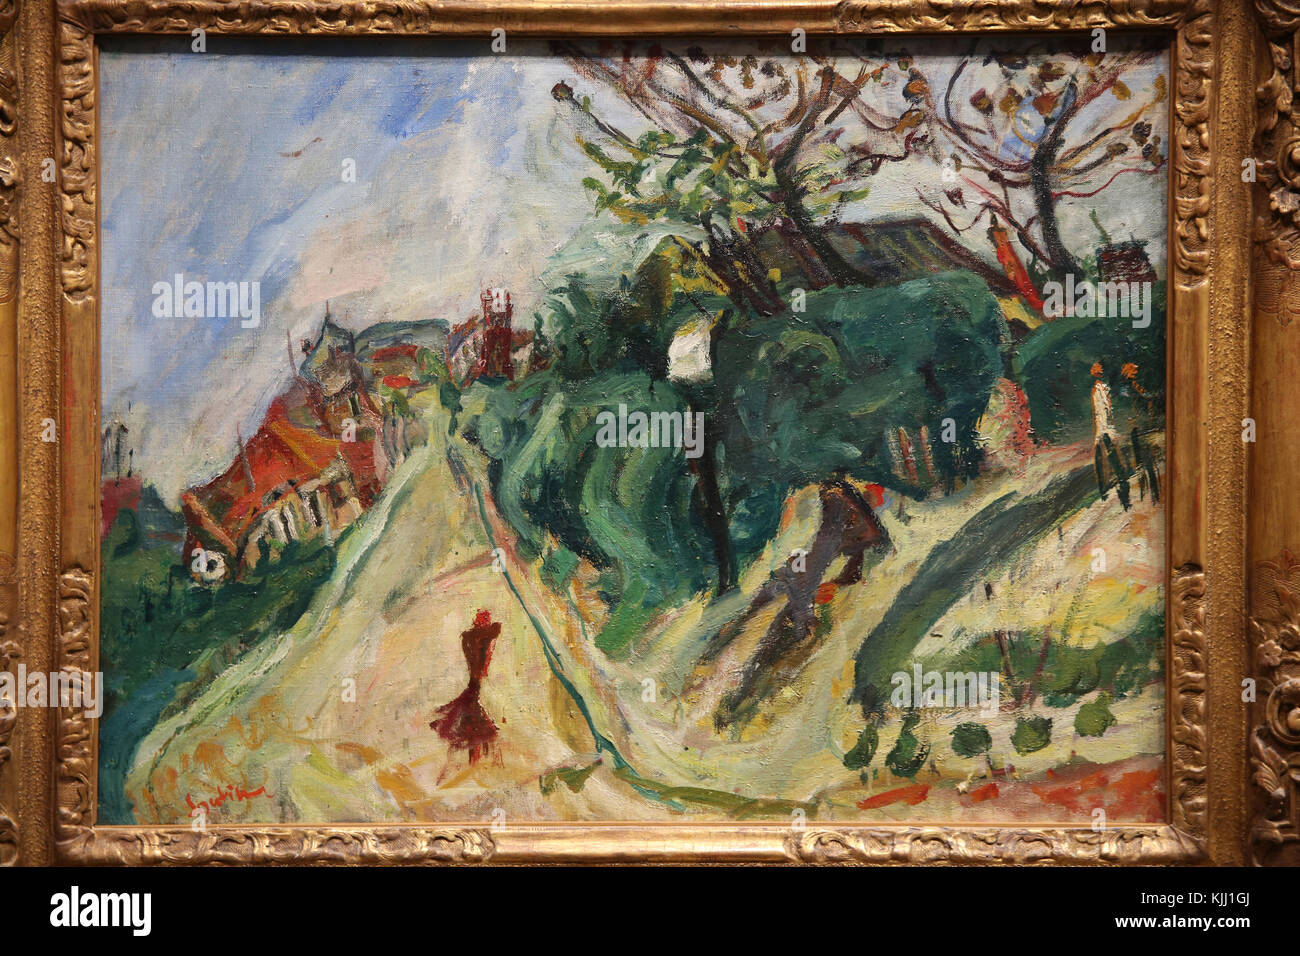 MusŽe de l'Orangerie, Parigi. Cha•m Soutine, Paysage avec personnage, vers 1918-1919. Huile sur toile. La Francia. Foto Stock